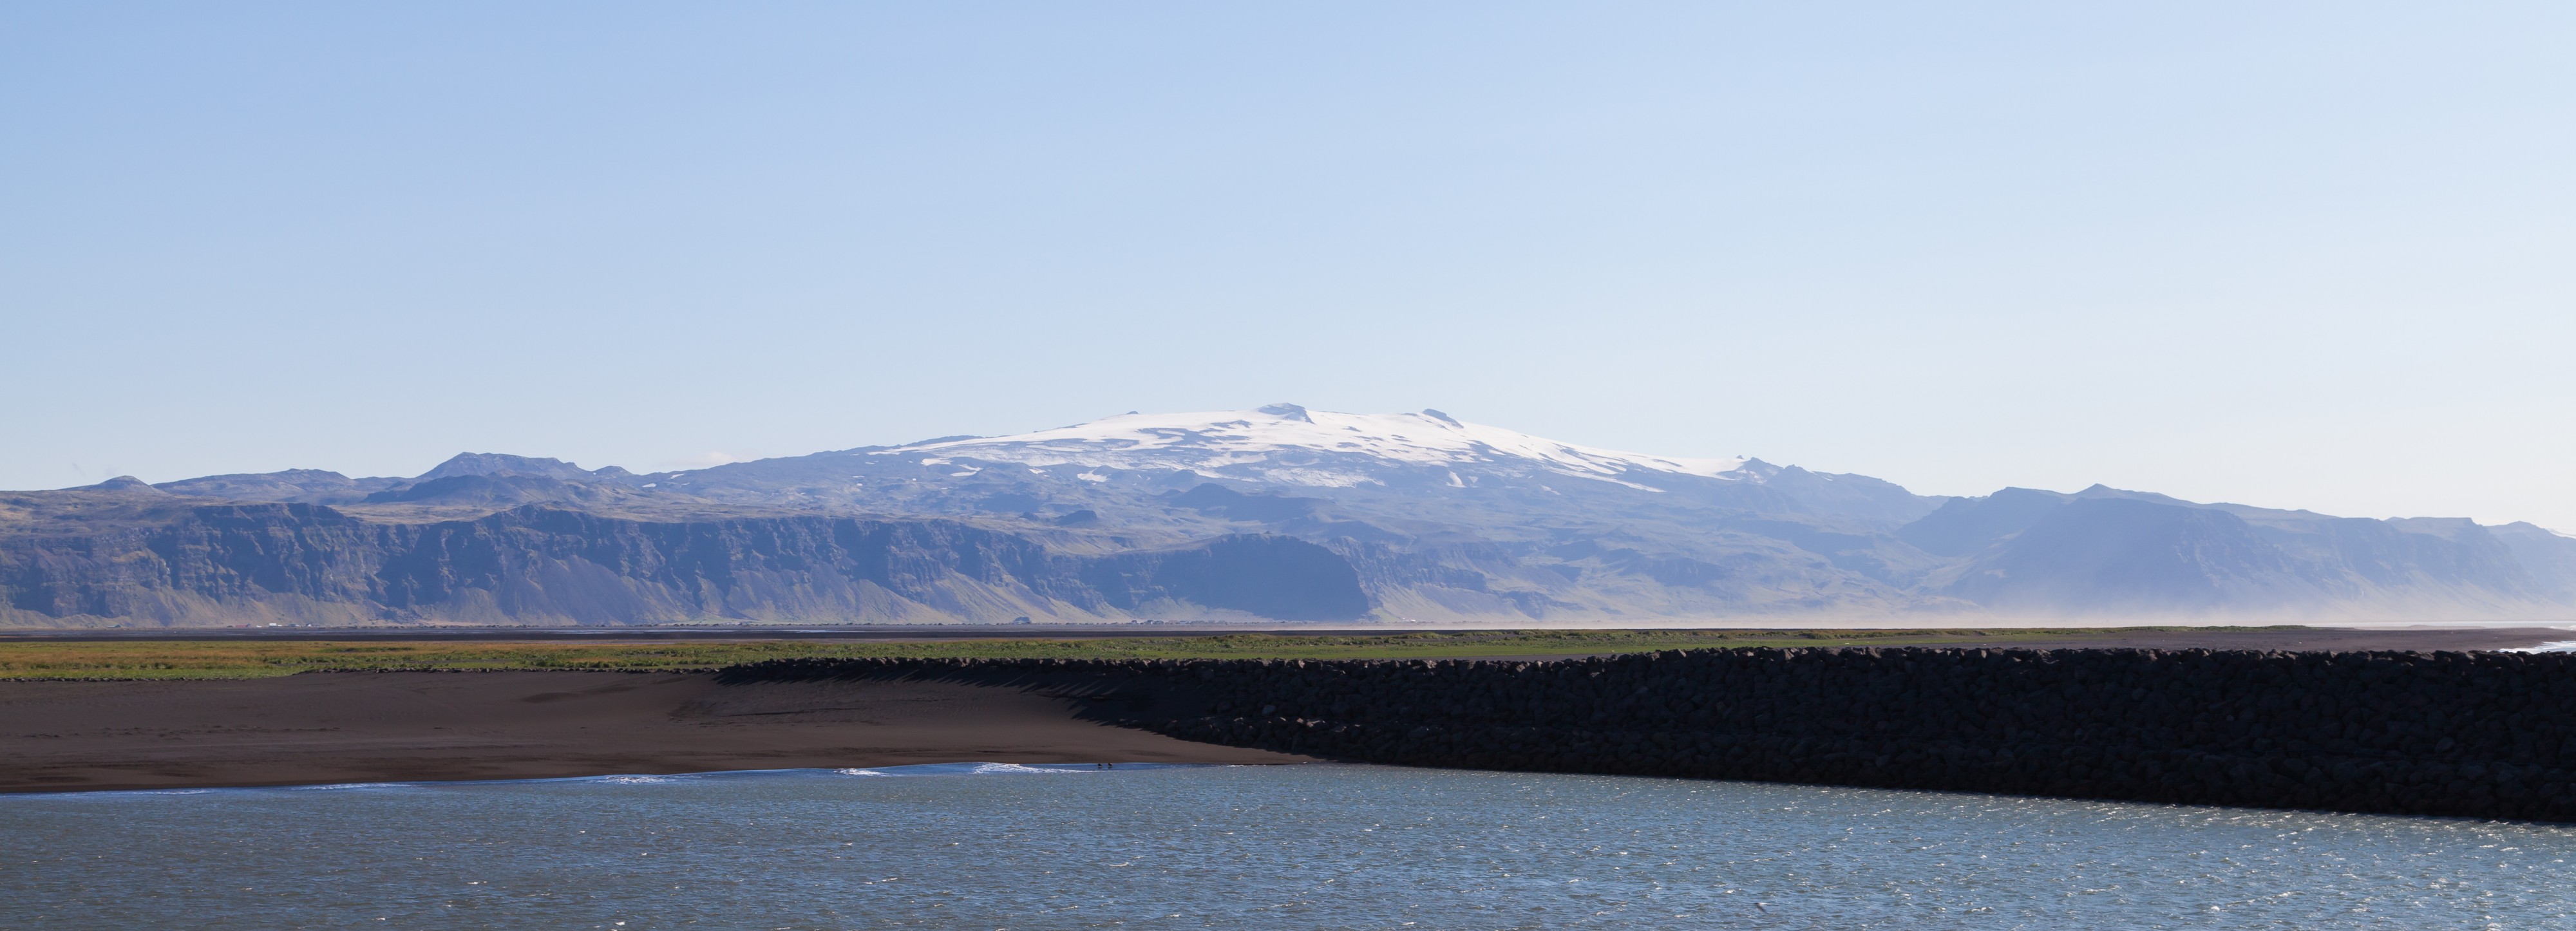 Eyjafjallajökull desde Landeyjahöfn, Suðurland, Islandia, 2014-08-17, DD 002